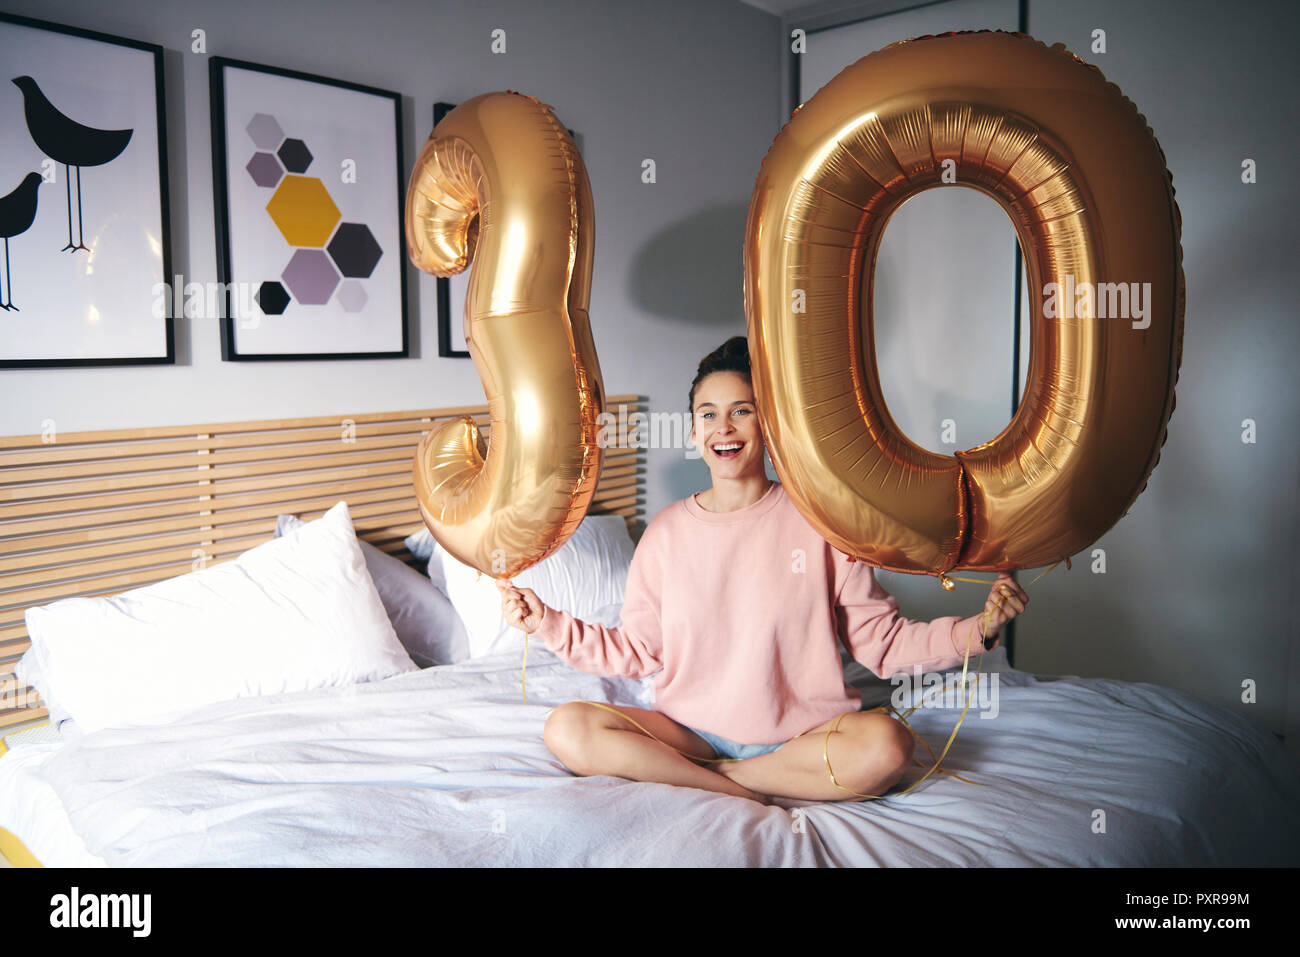 Jeune femme heureuse avec des ballons d'or, célébrant son anniversaire Banque D'Images